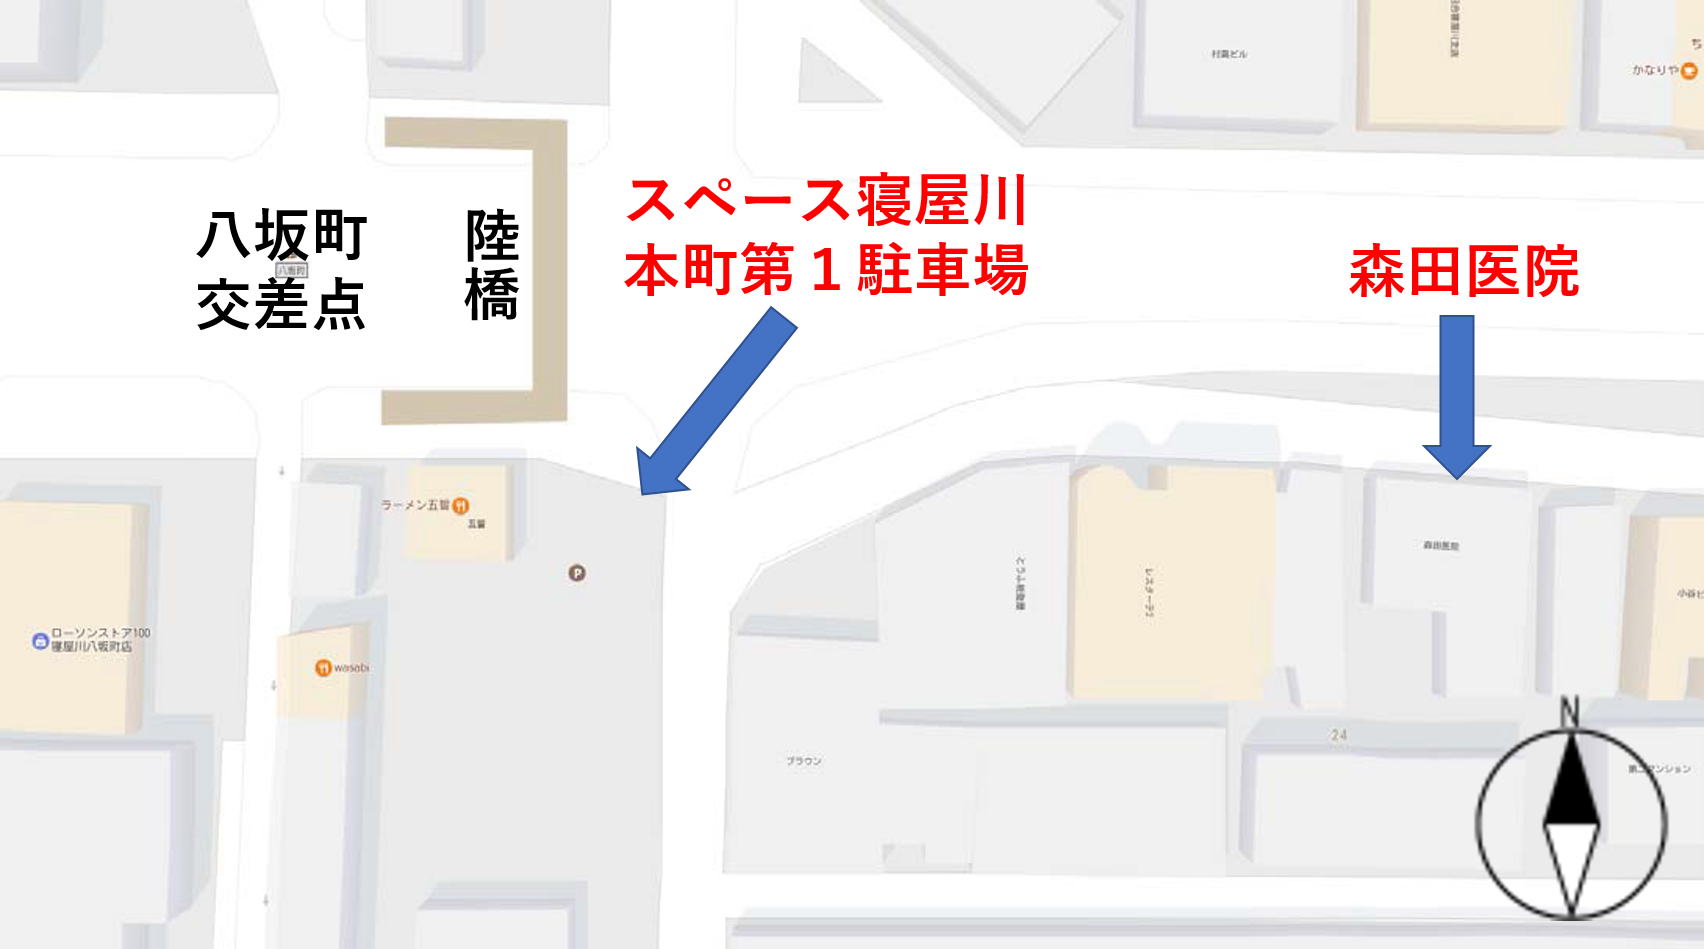 森田医院駐車場地図.png